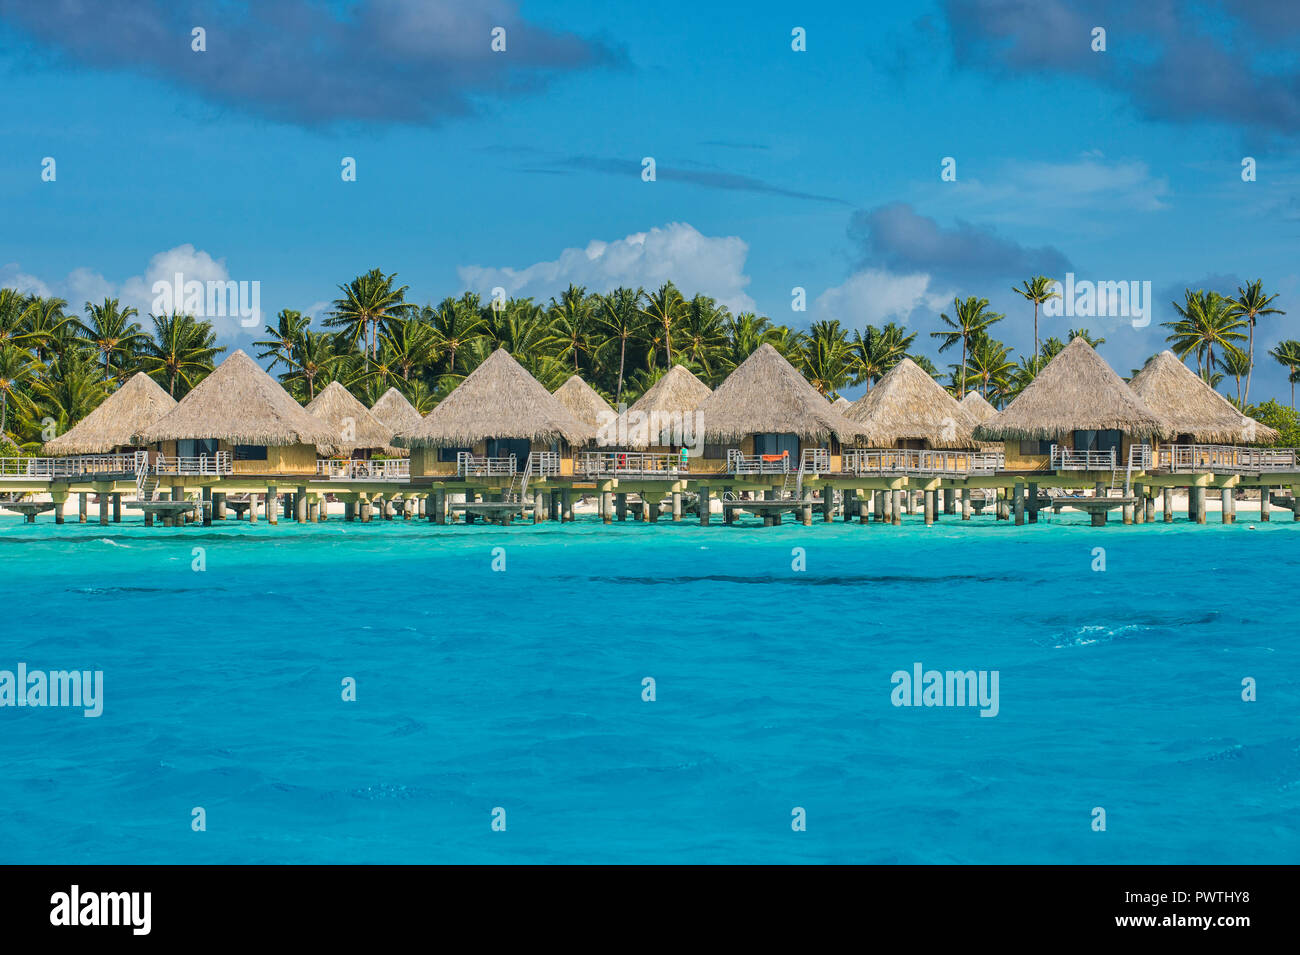 Bungalows sobre el agua en un hotel de lujo, Bora Bora, Französisch-Polynesien Foto de stock